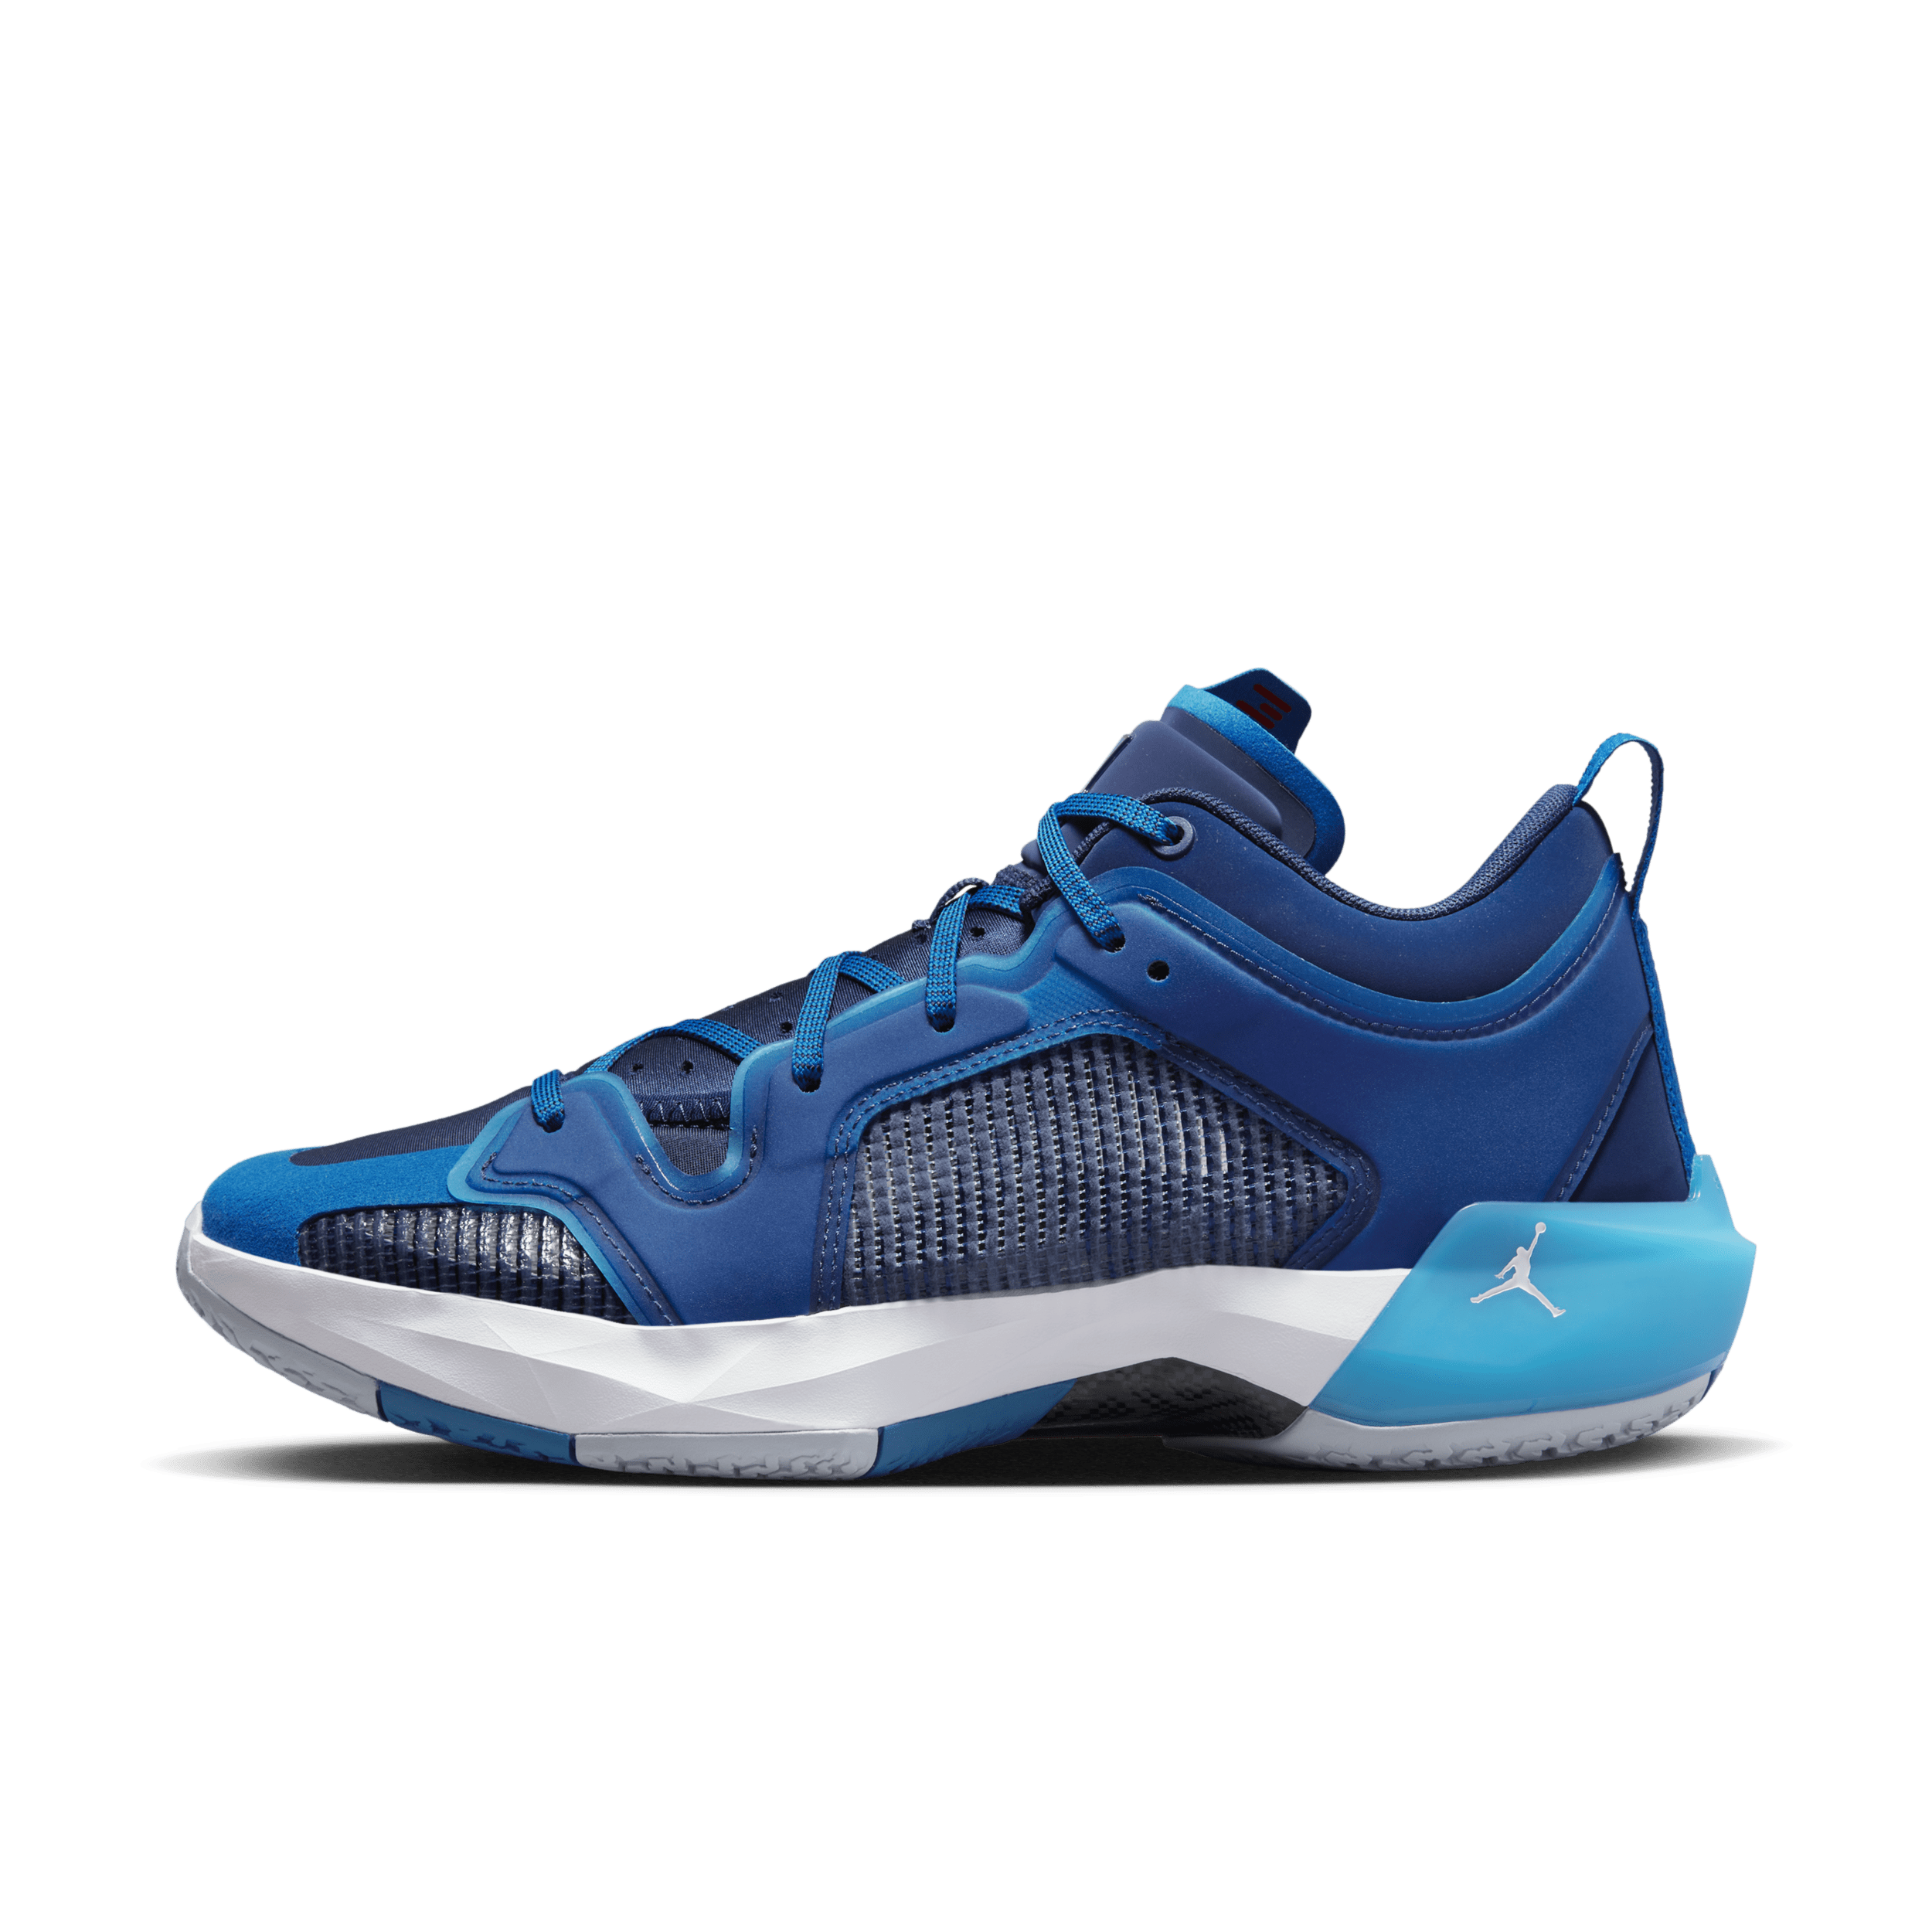 Air Jordan XXXVII Low Basketbalschoenen - Blauw